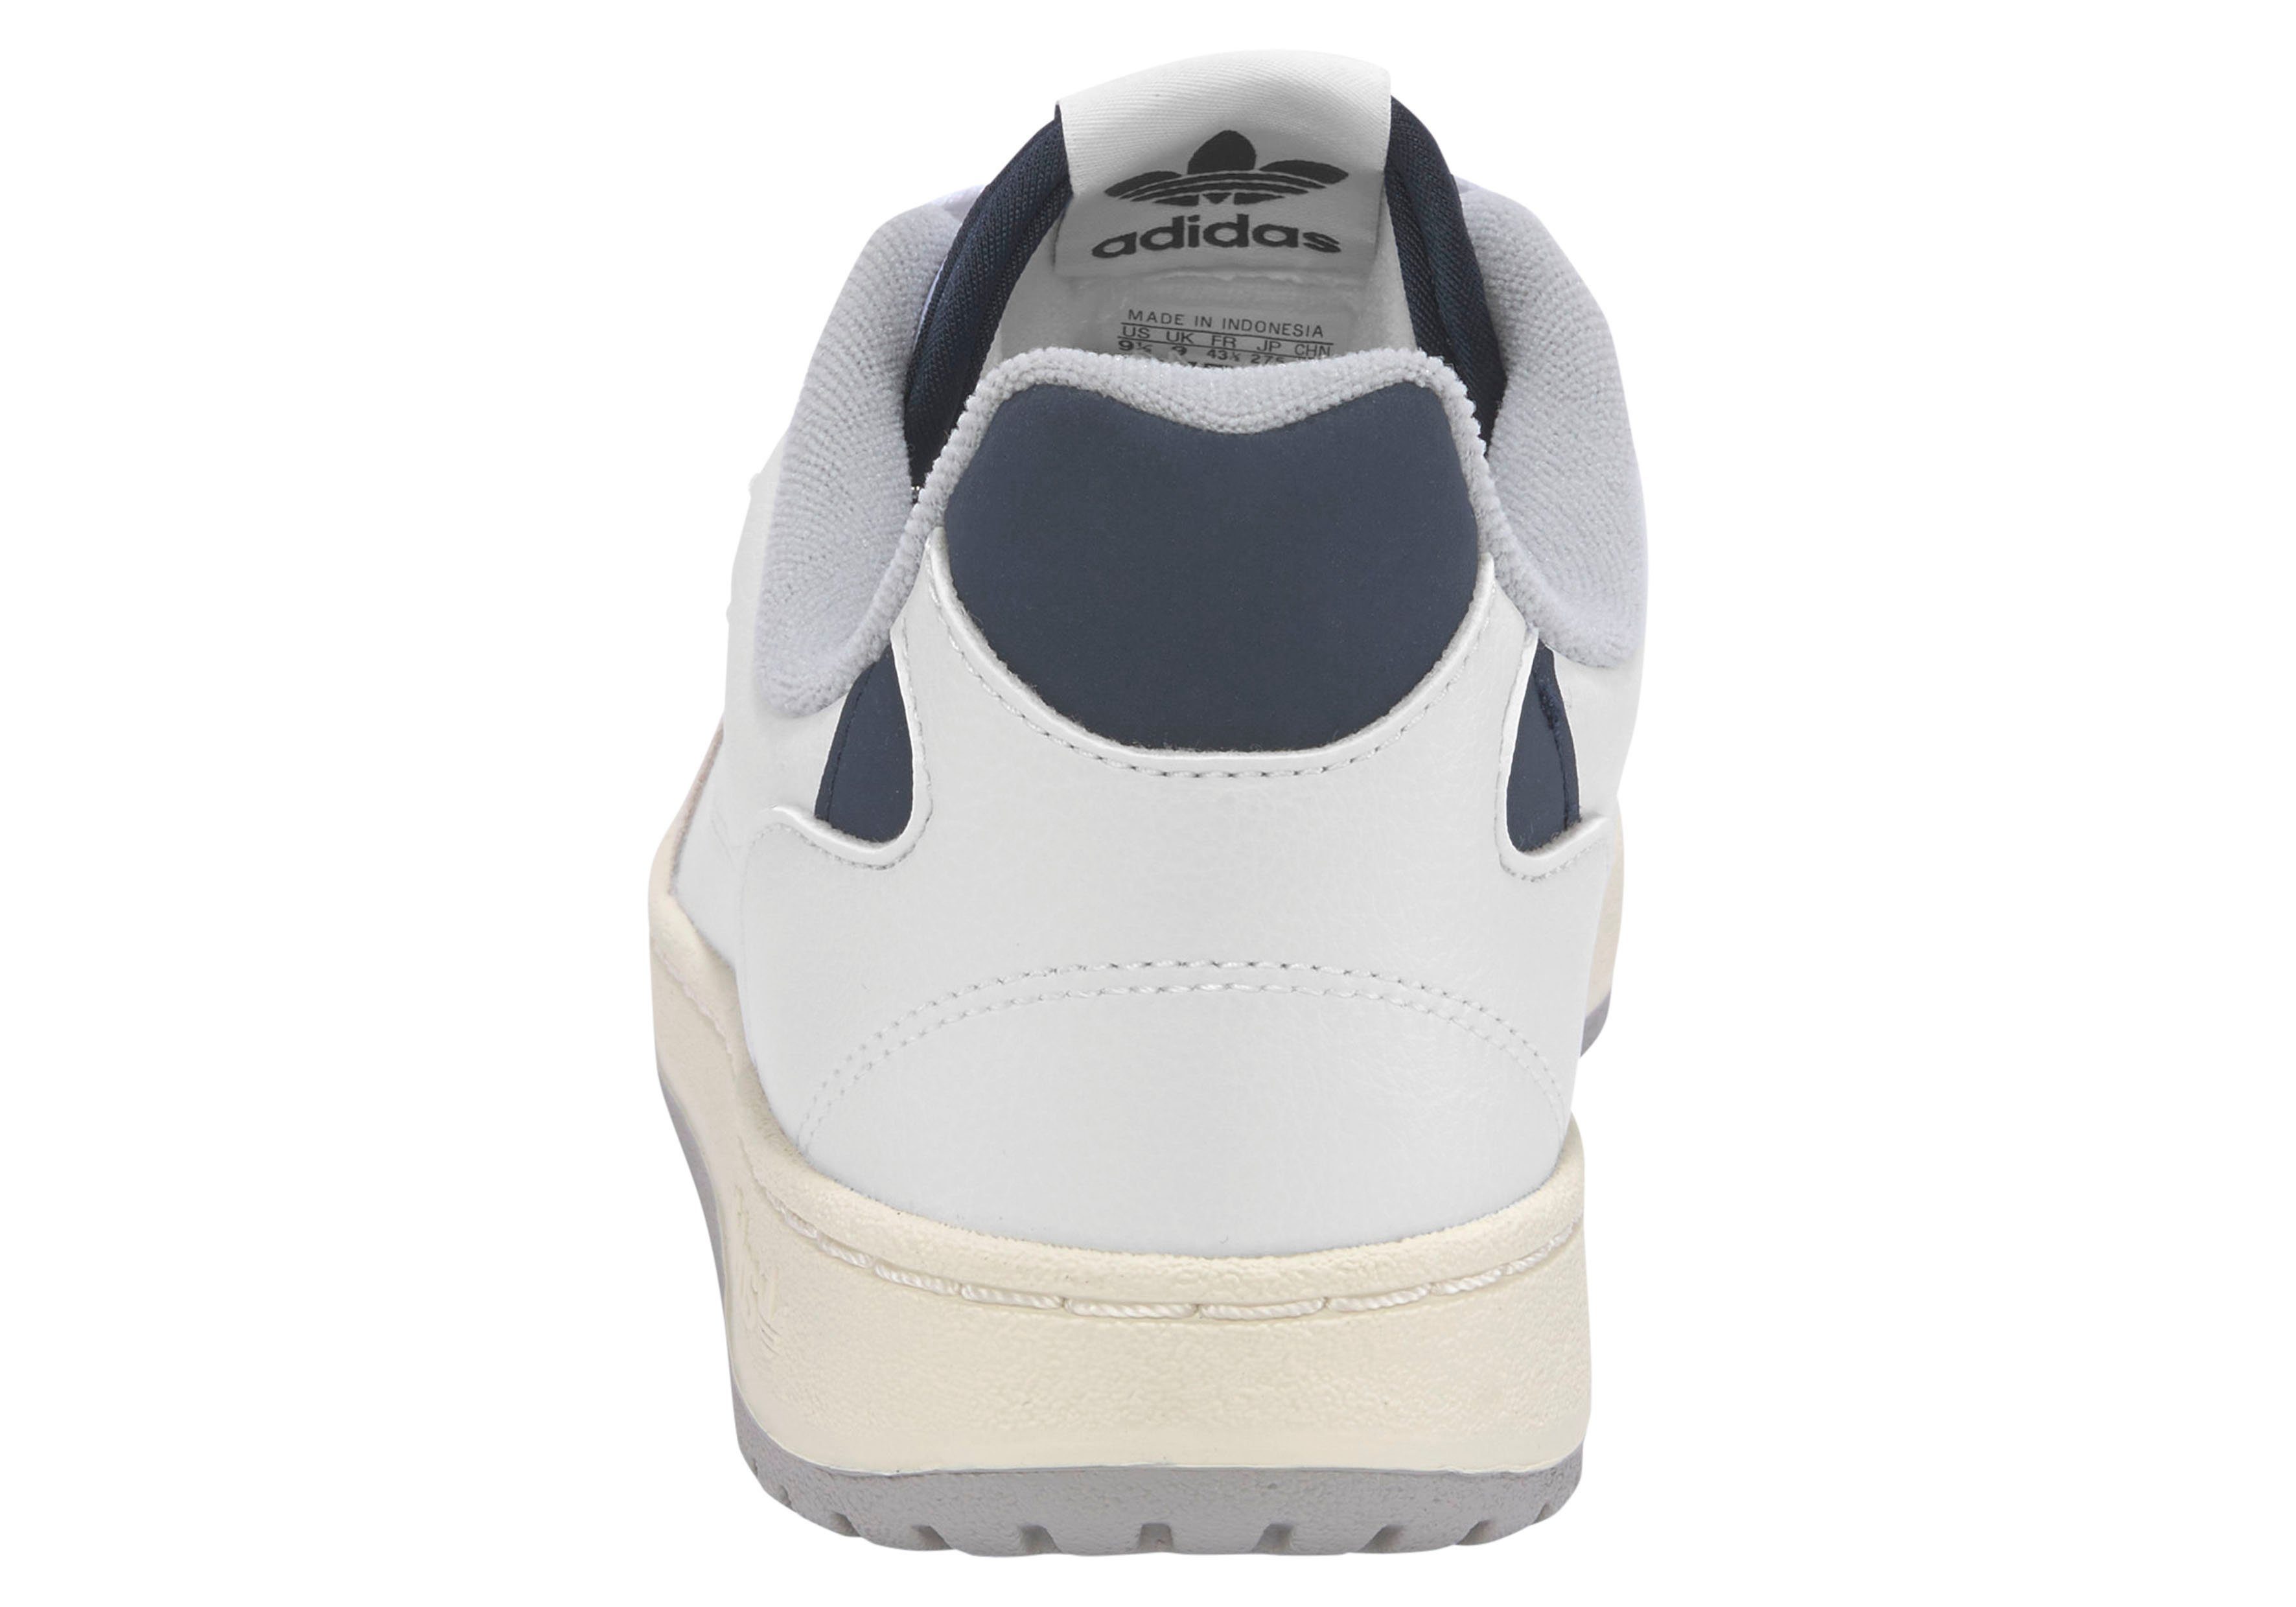 NY adidas FTWWHT-FTWWHT-LEGINK Originals 90 Sneaker